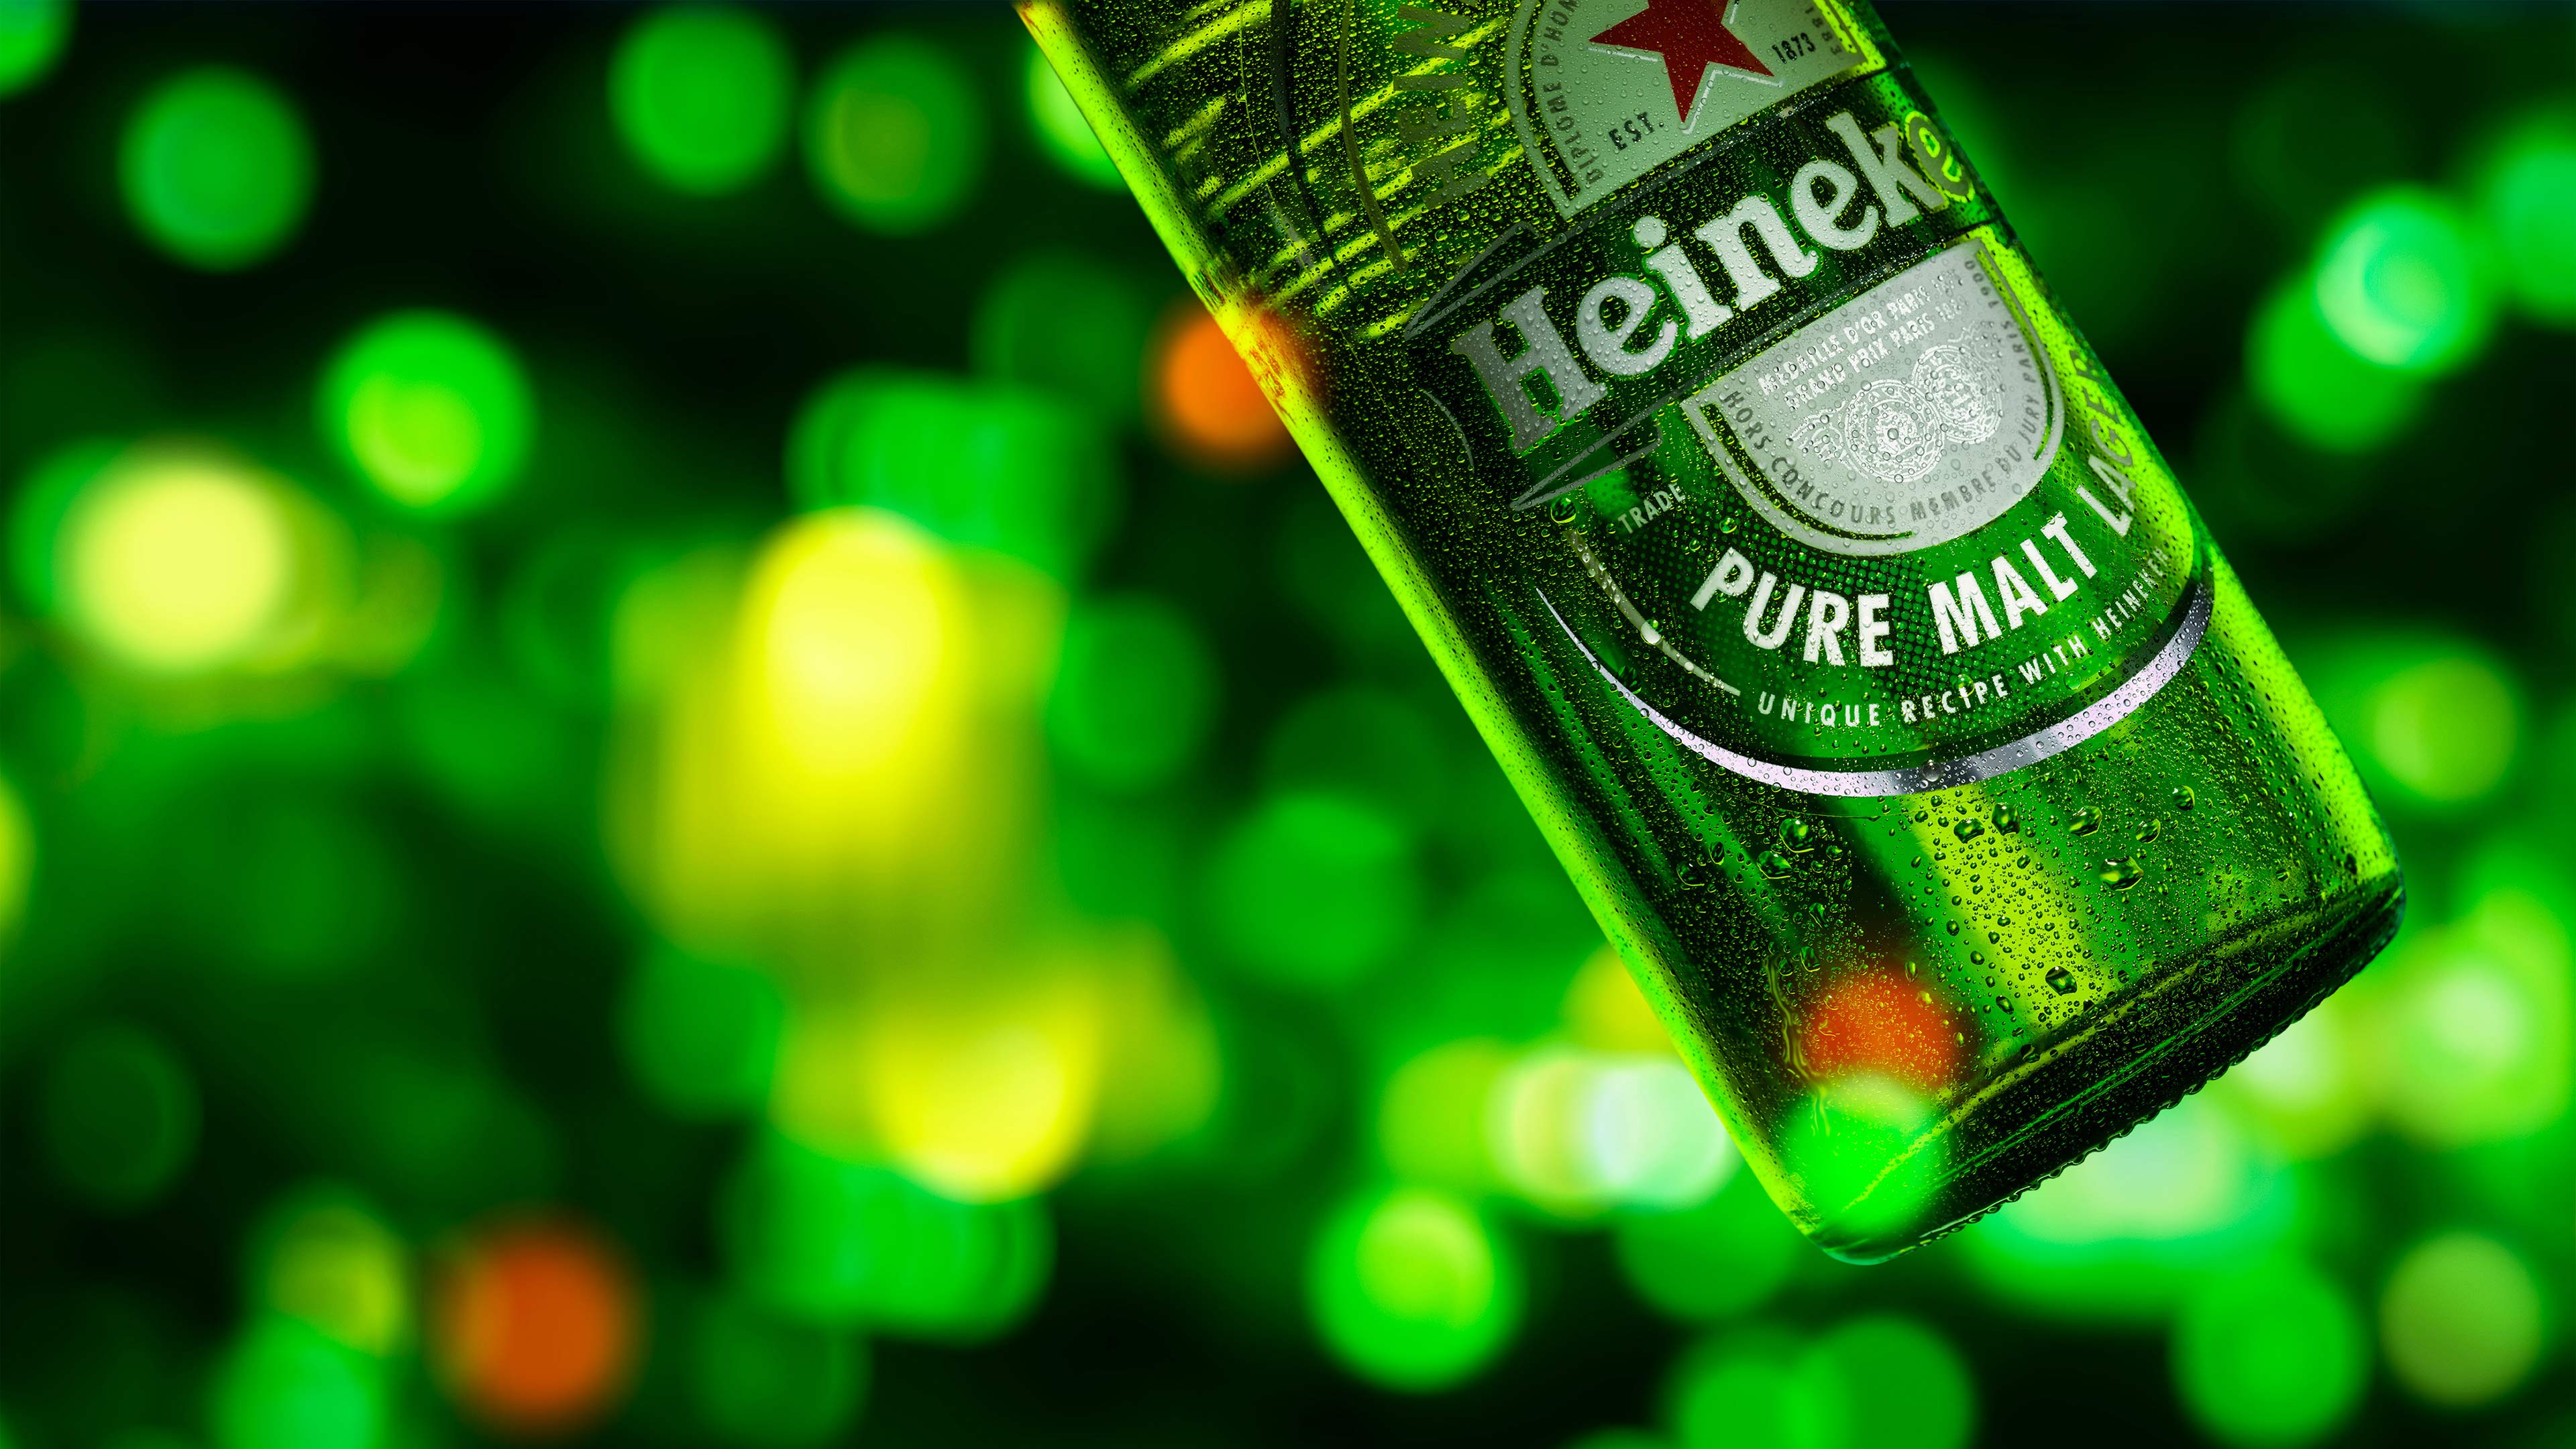 Chai Bia Heineken Hình ảnh Sẵn có  Tải xuống Hình ảnh Ngay bây giờ  Bia   Rượu Chai  Thùng đựng hàng Chai bia  iStock